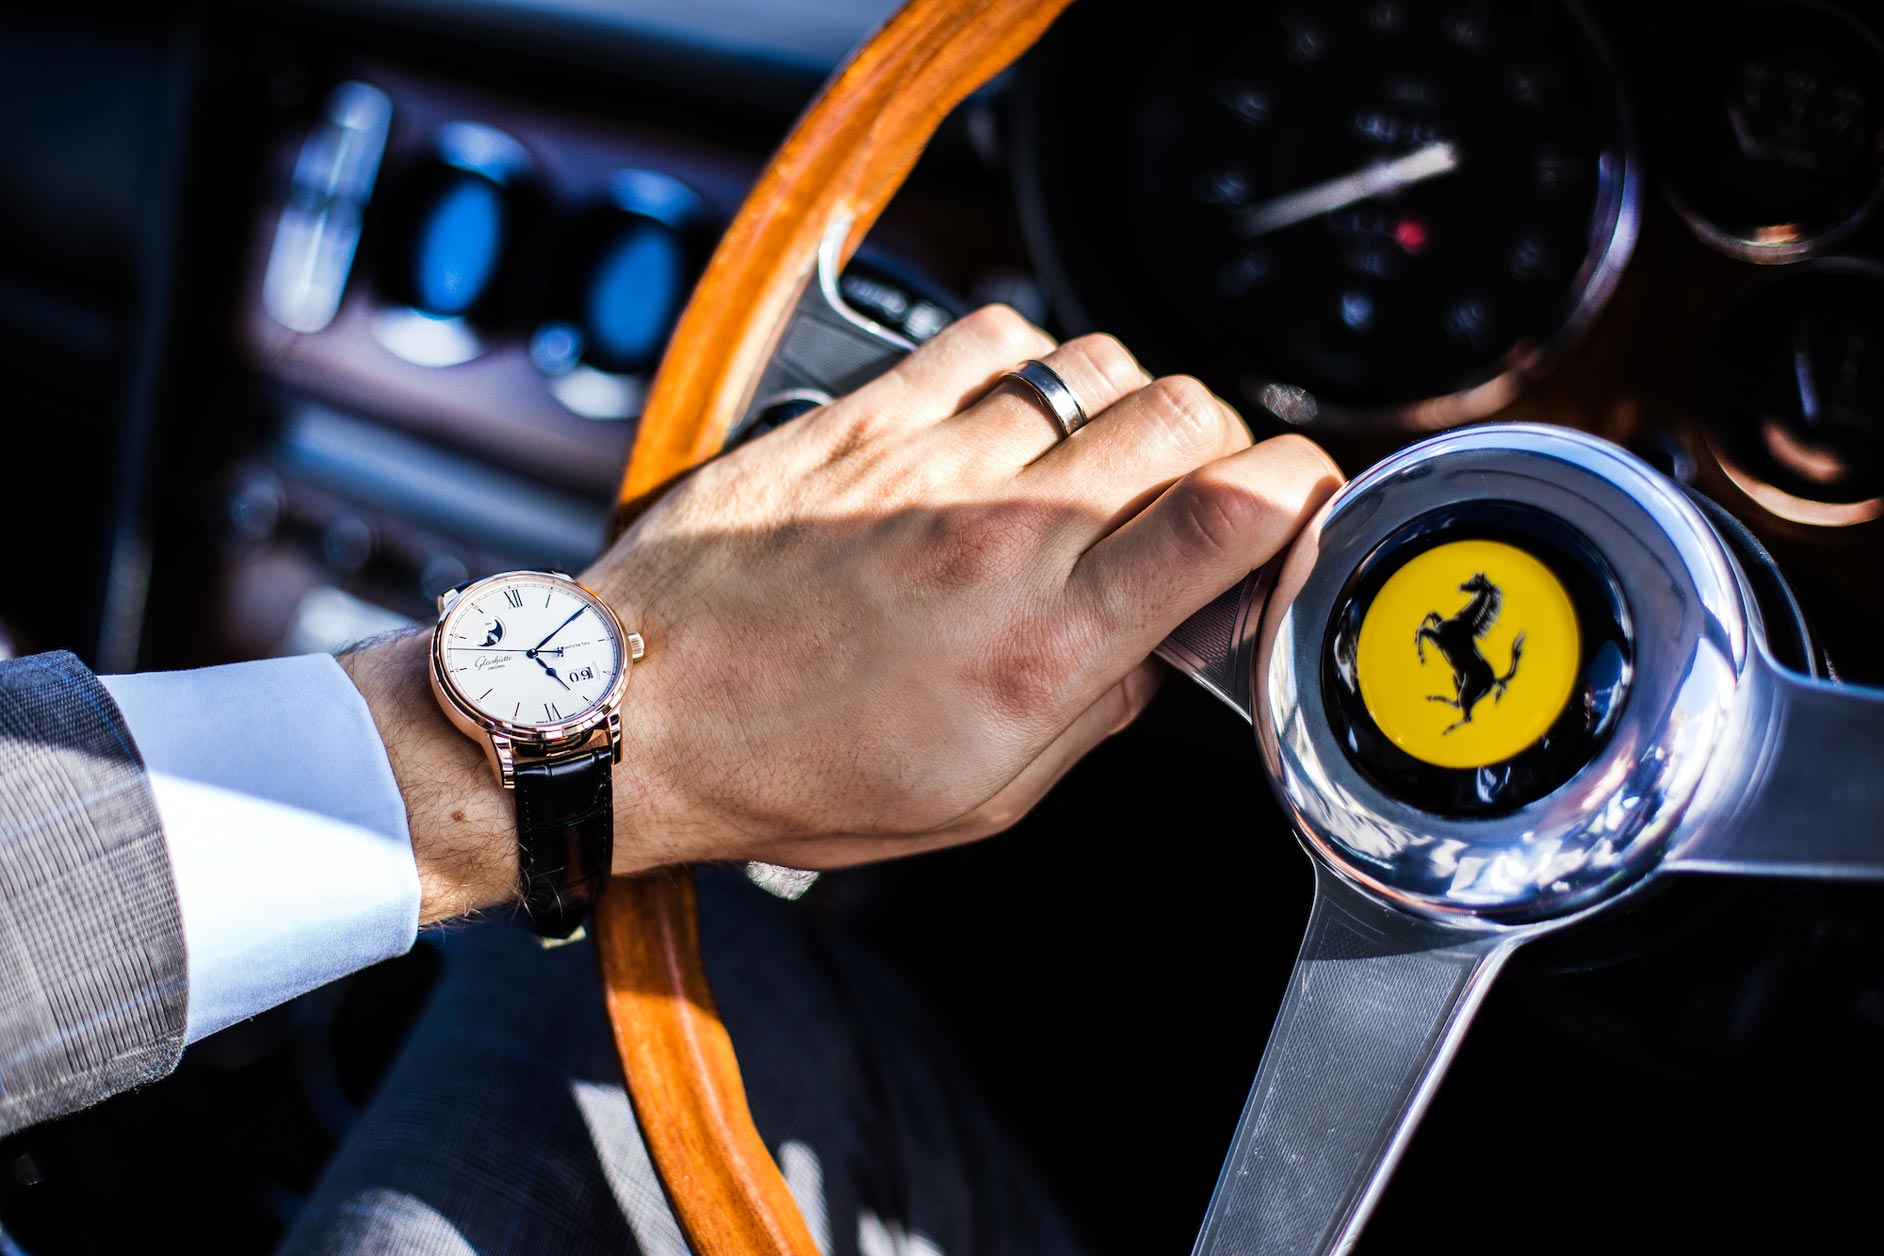 Wristwatch alongside Ferrari